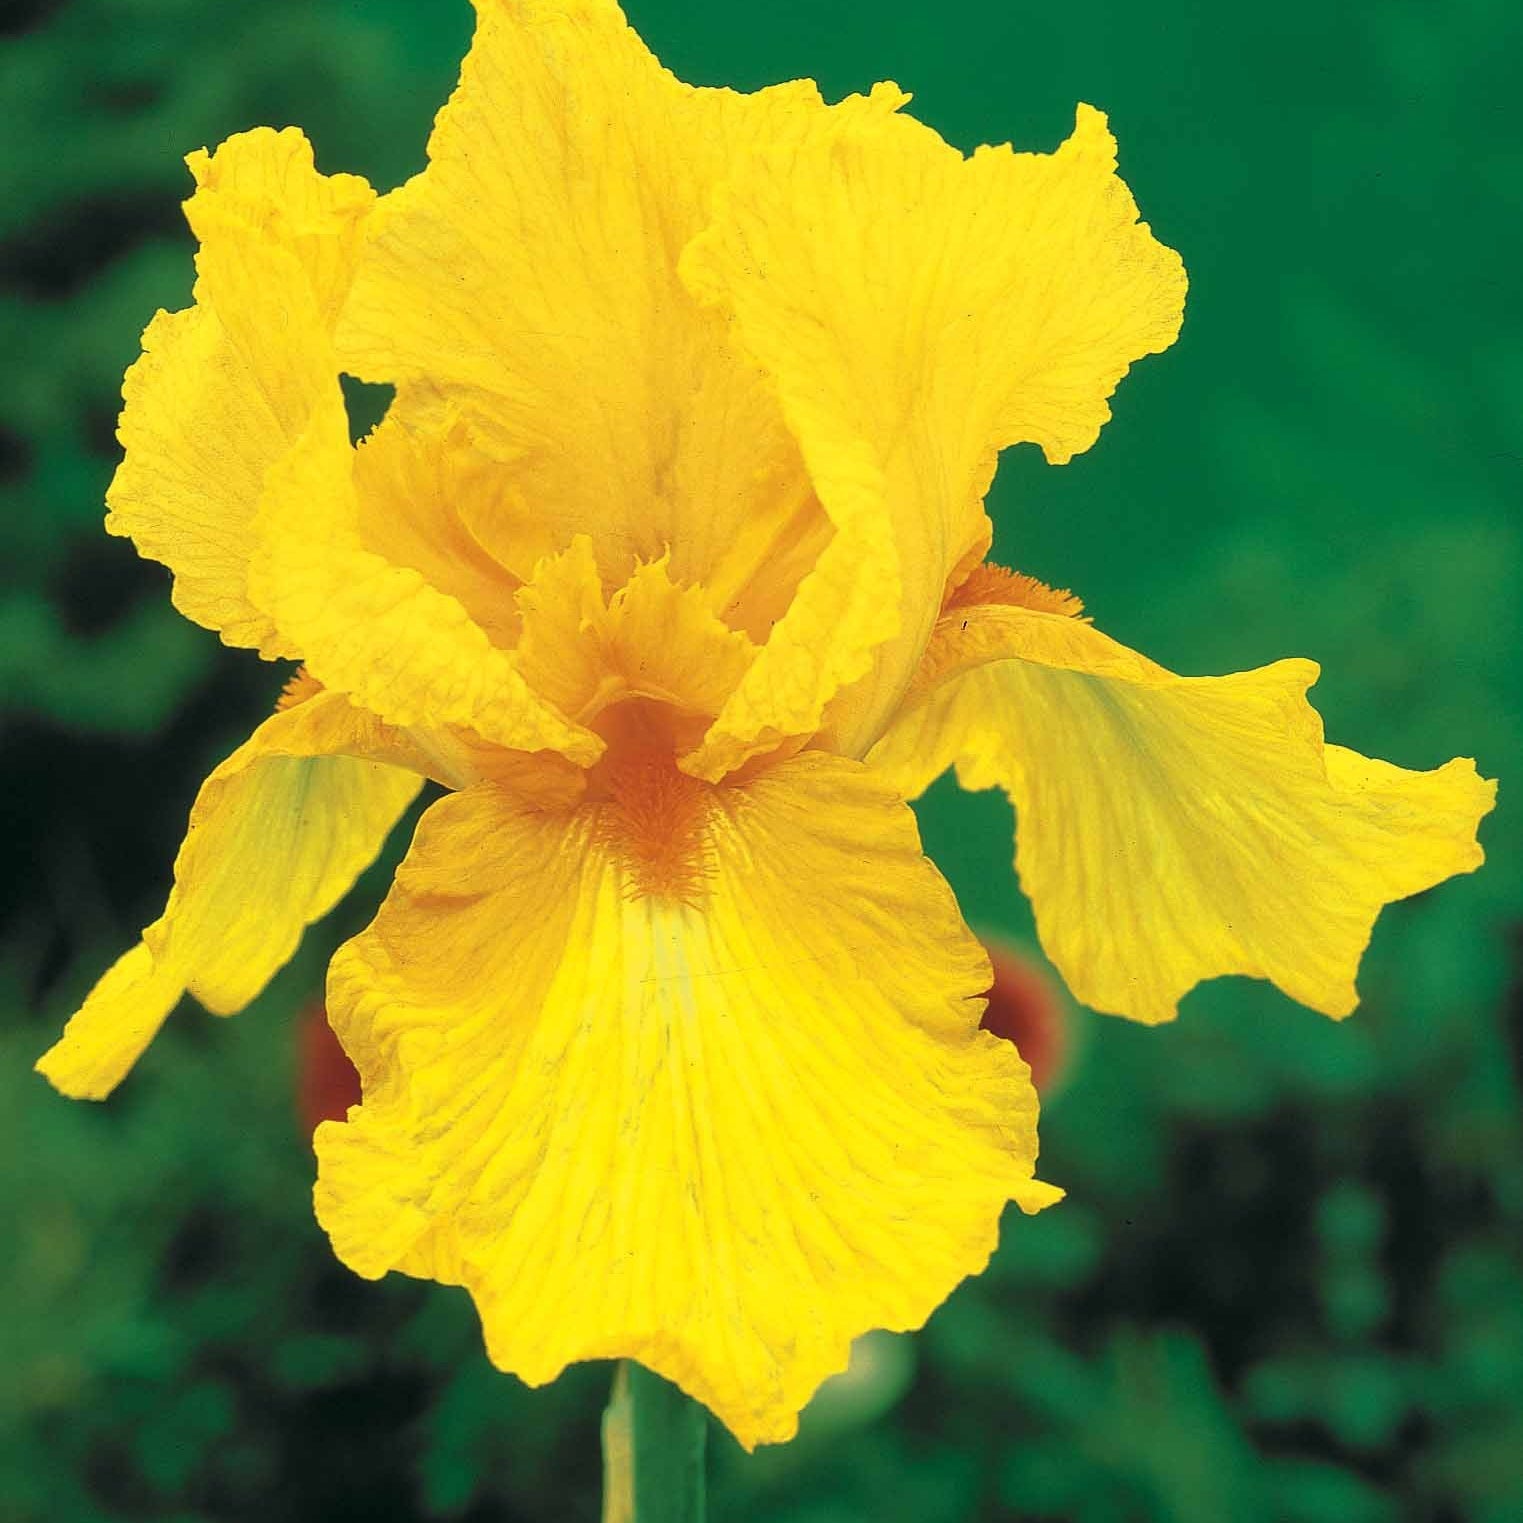 Sammlung von Garten-Iris: Lasso, Bordure, Sangreal. (x6) - Iris germanica  (2 lasso, 2 bordure, 2 sangreal) - Stauden